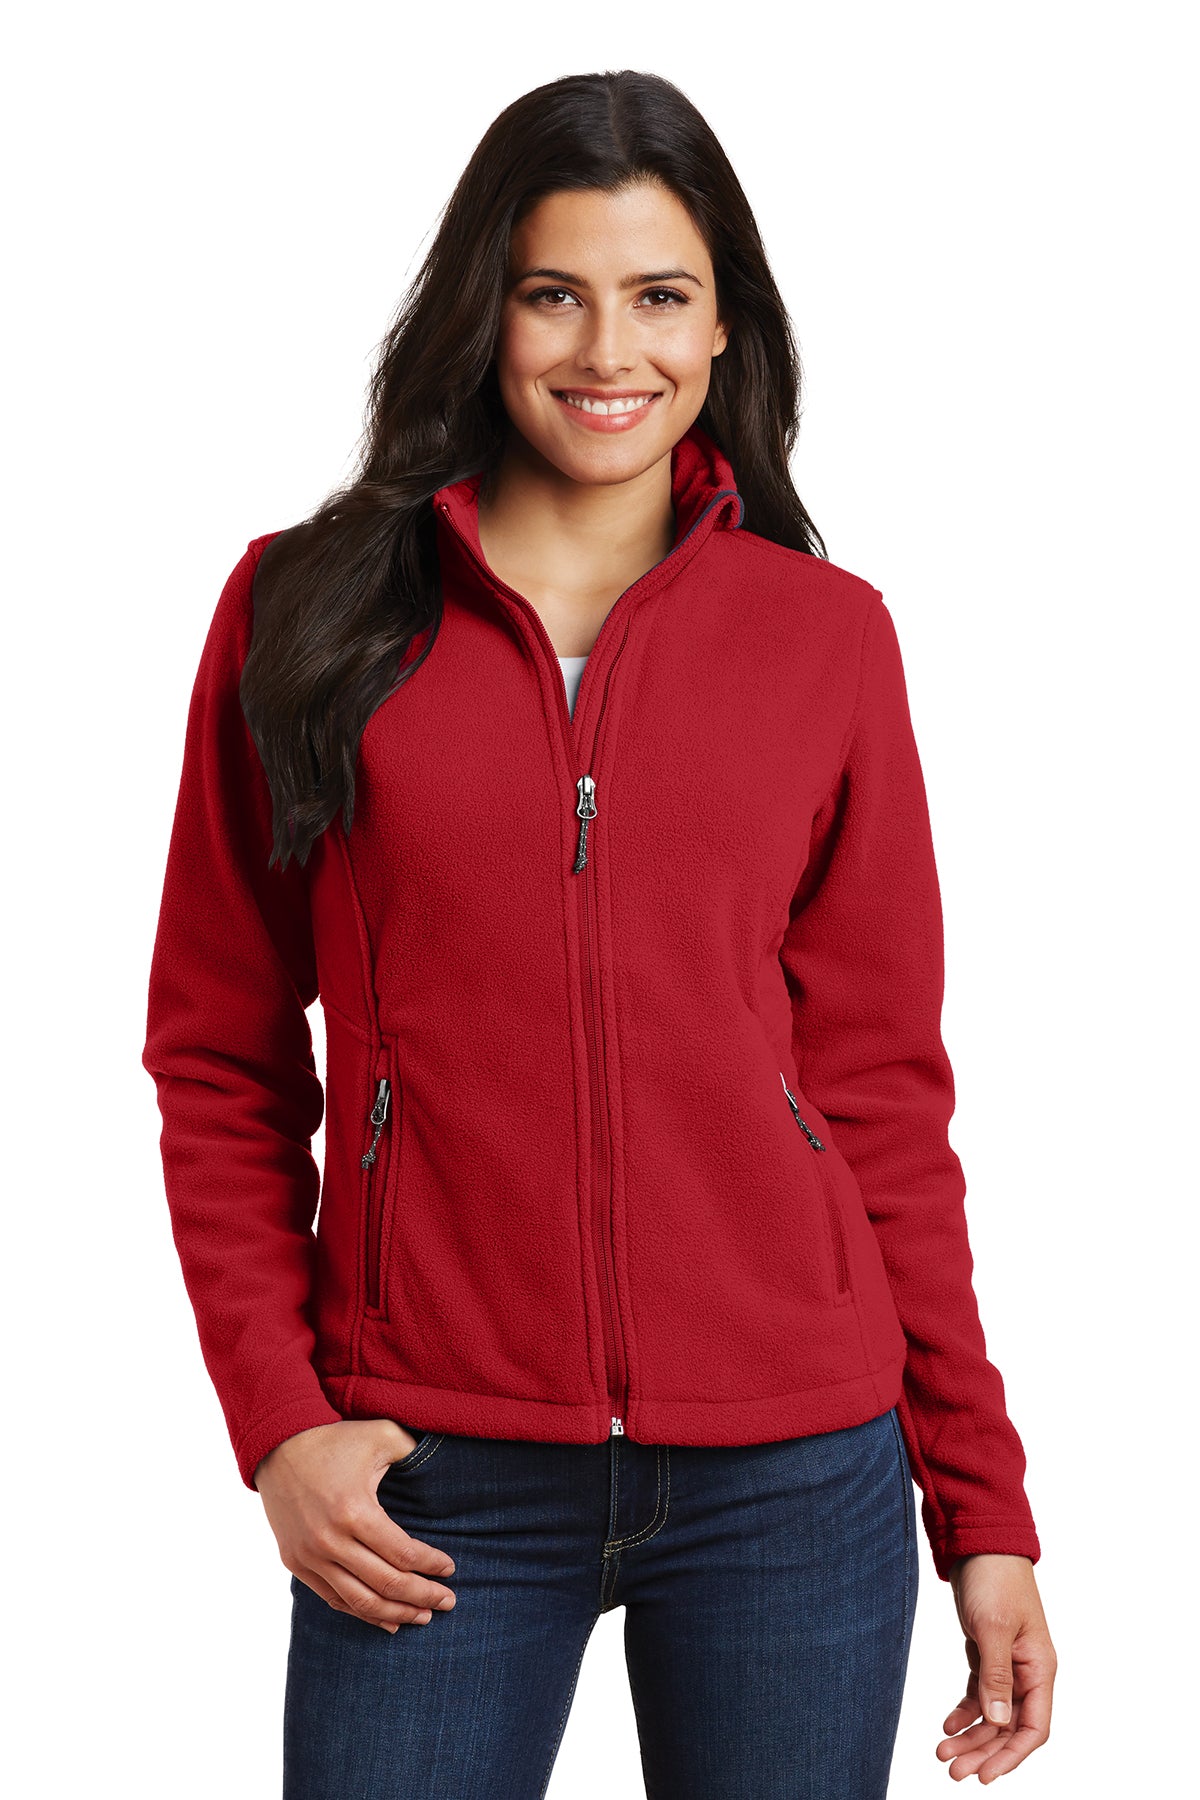 L217 Women's Fleece Jacket True Red